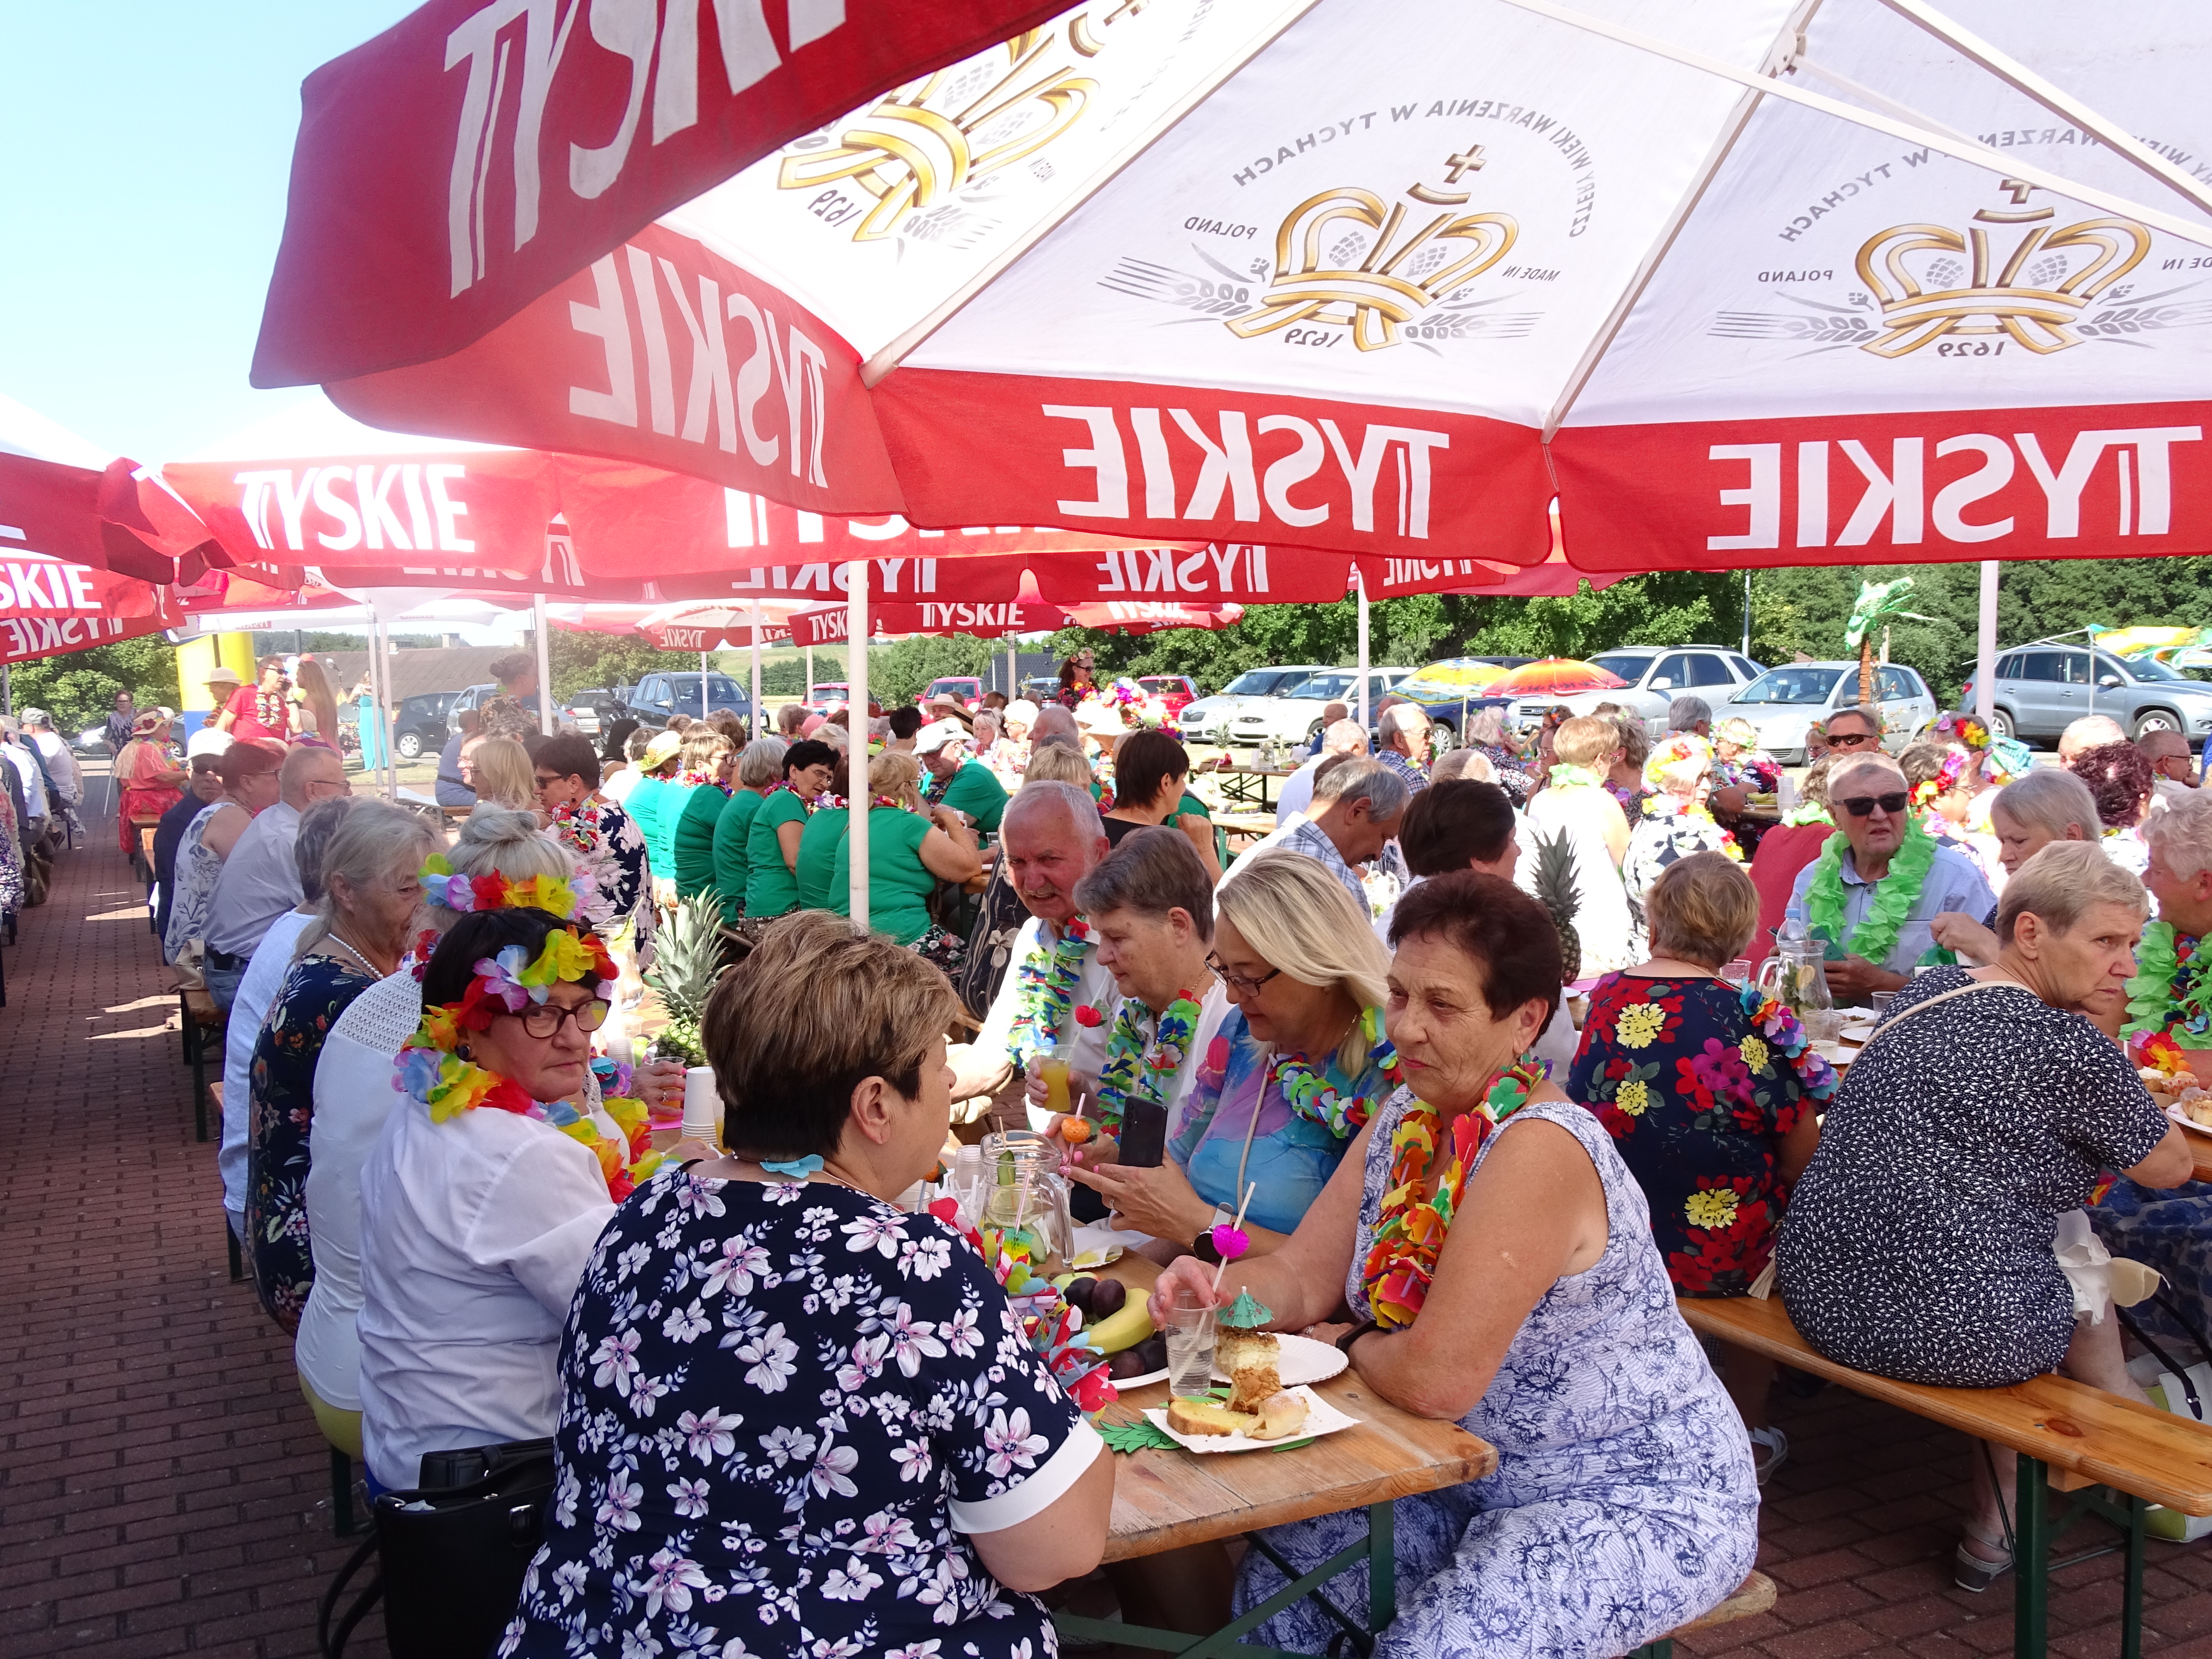 Uczestnicy pikniku zgromadzeni przy stołach pod parasolami